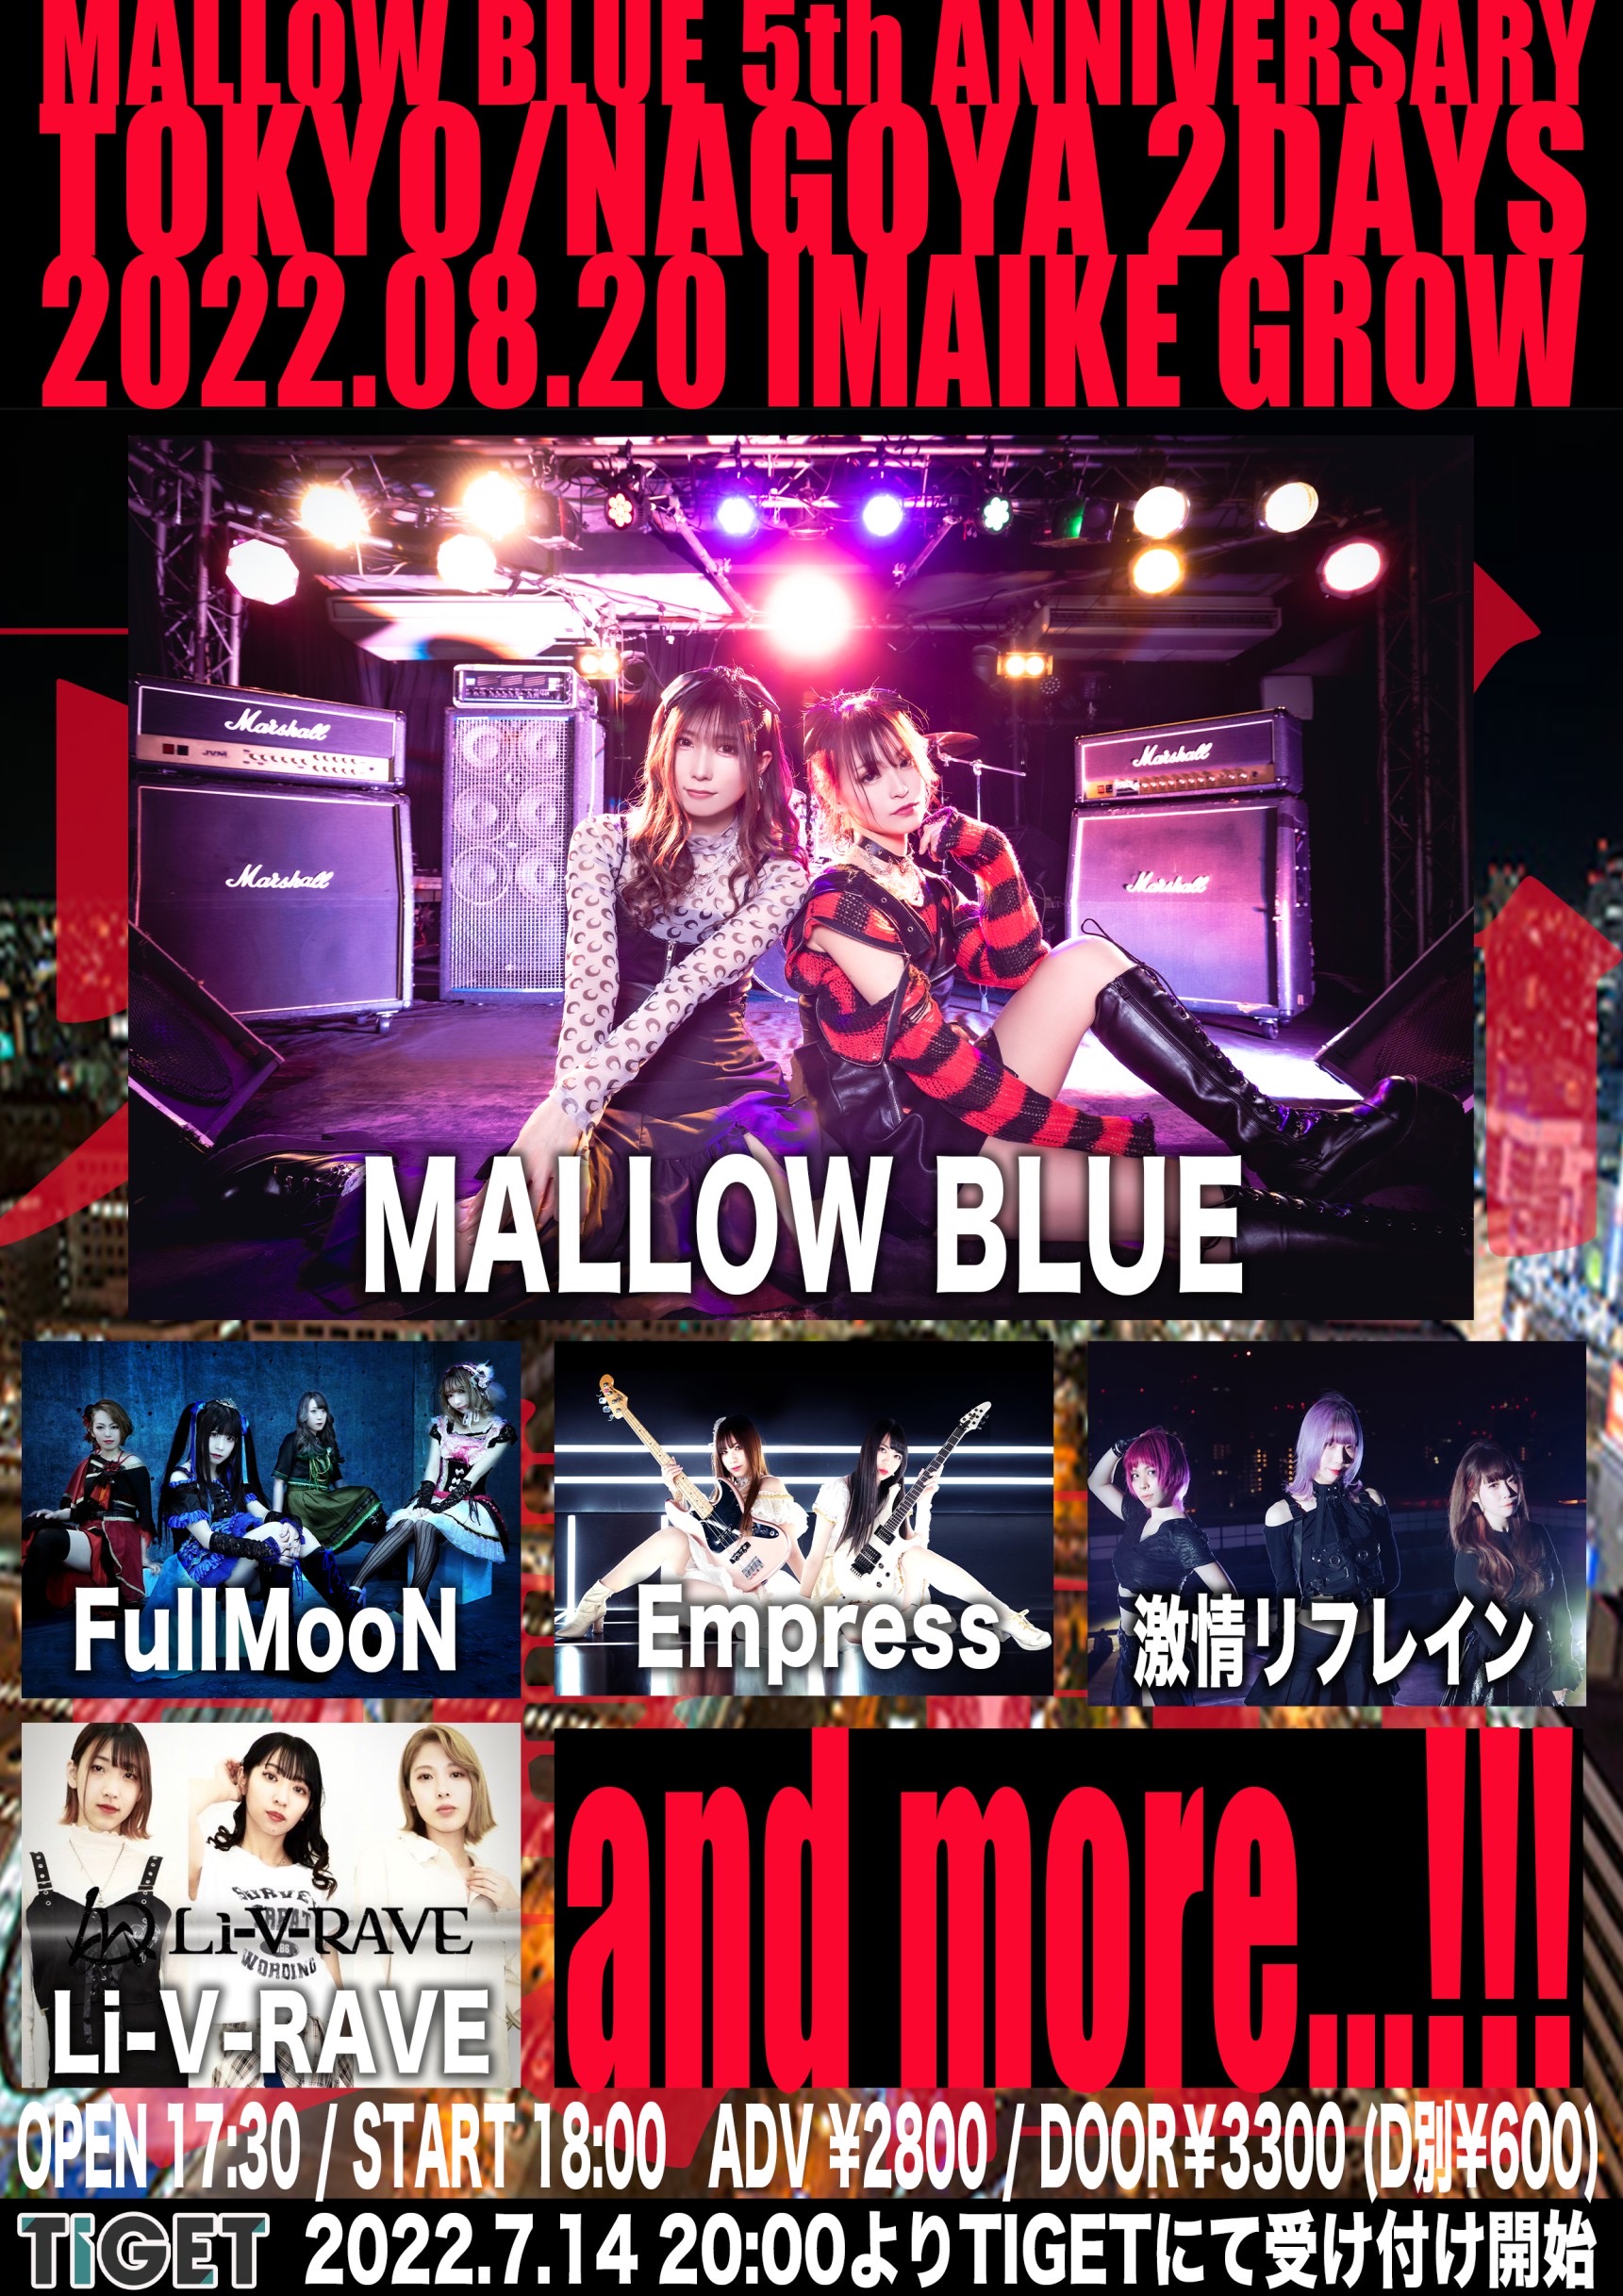 星井あおサポート出演公演『MALLOW BLUE 5th ANNIVERSARY-NAGOYA-』